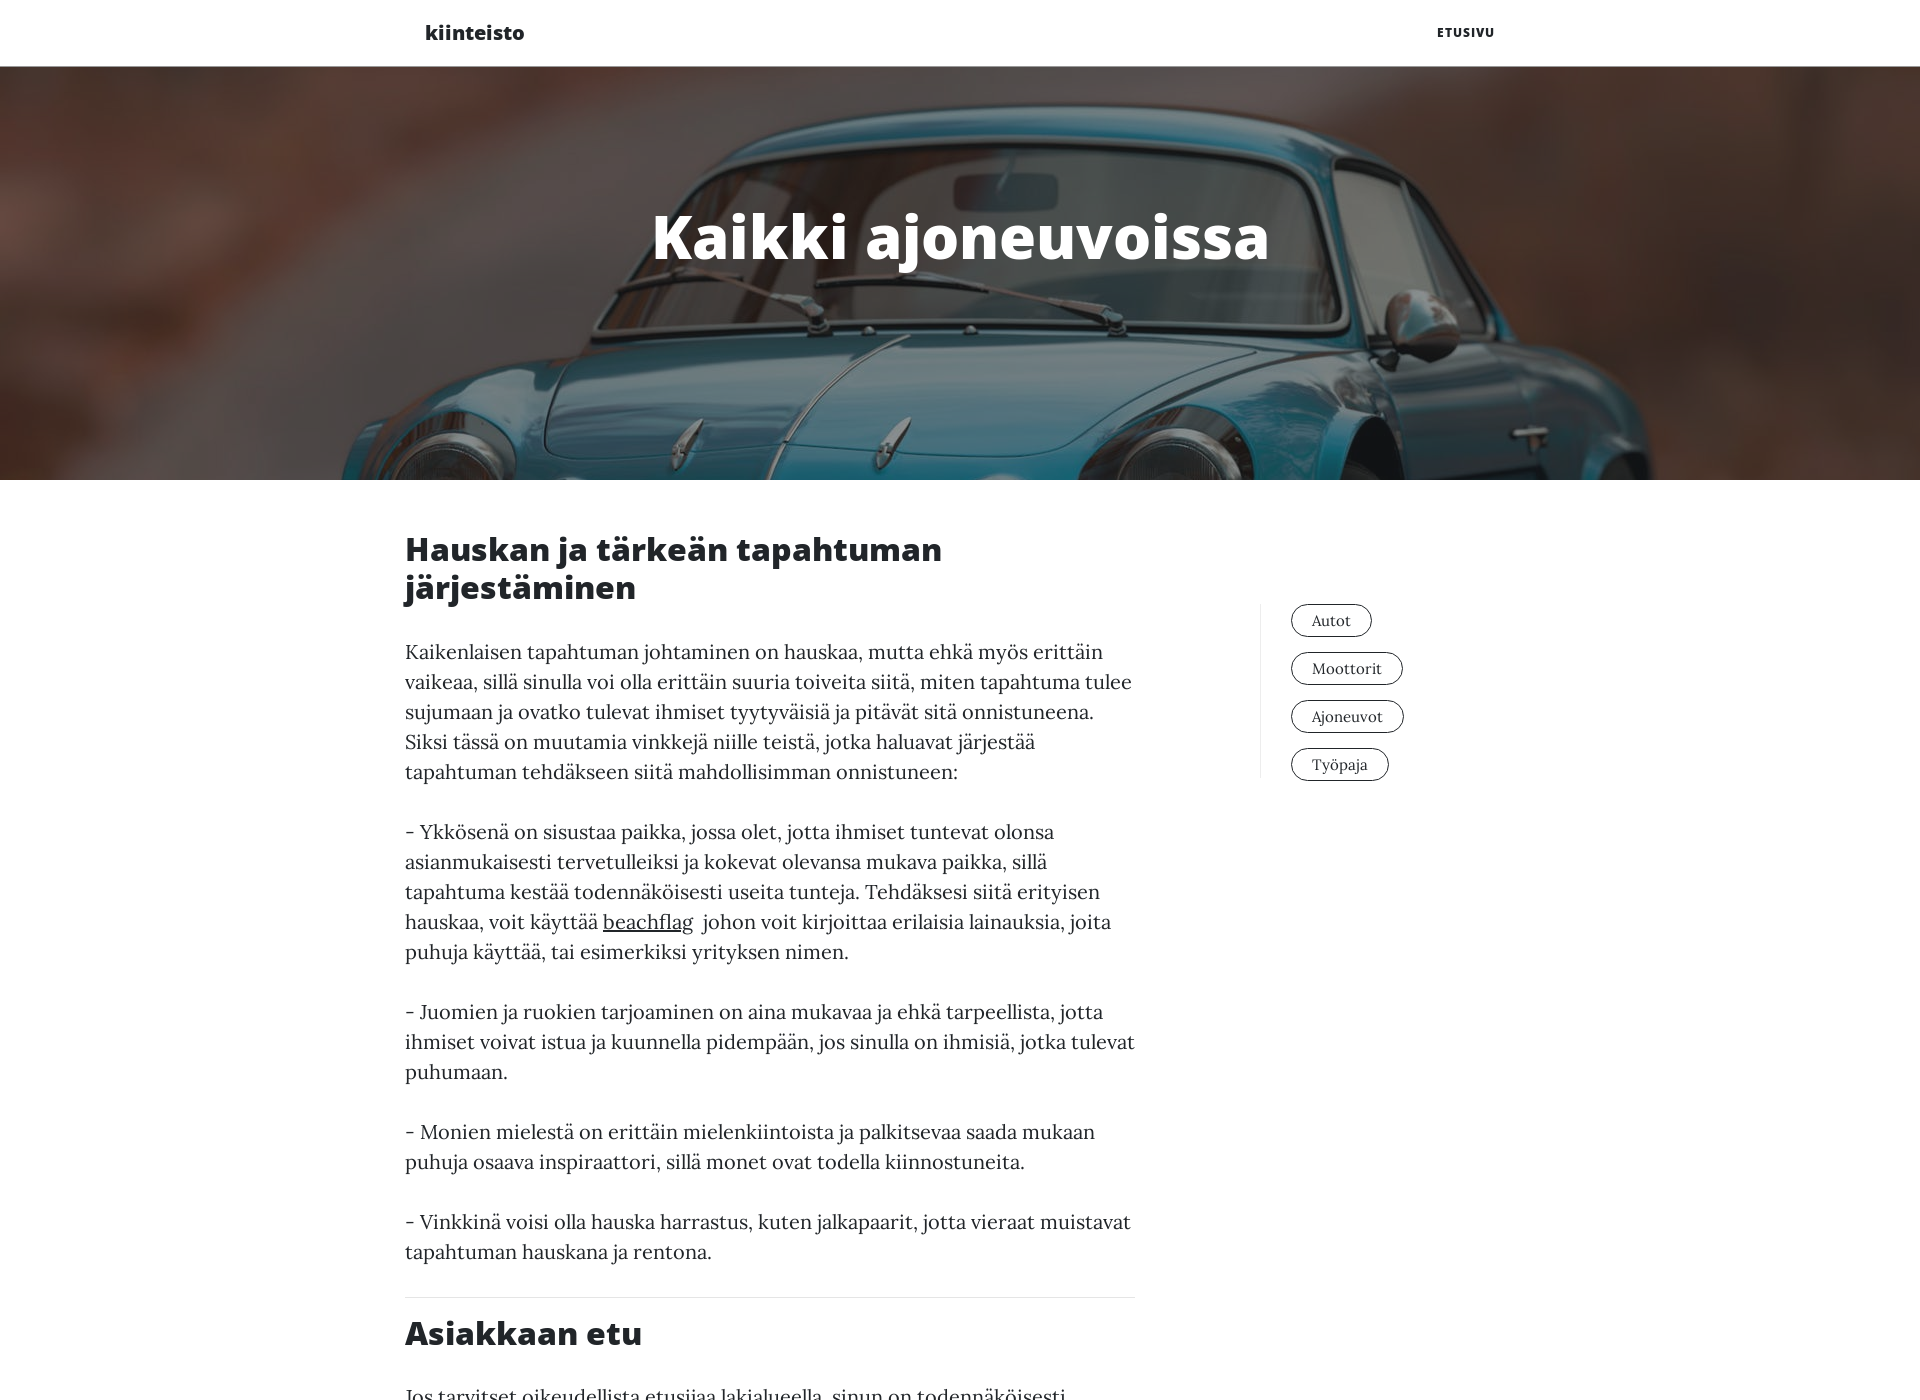 Screenshot for kiinteistotarina-isannointi.fi